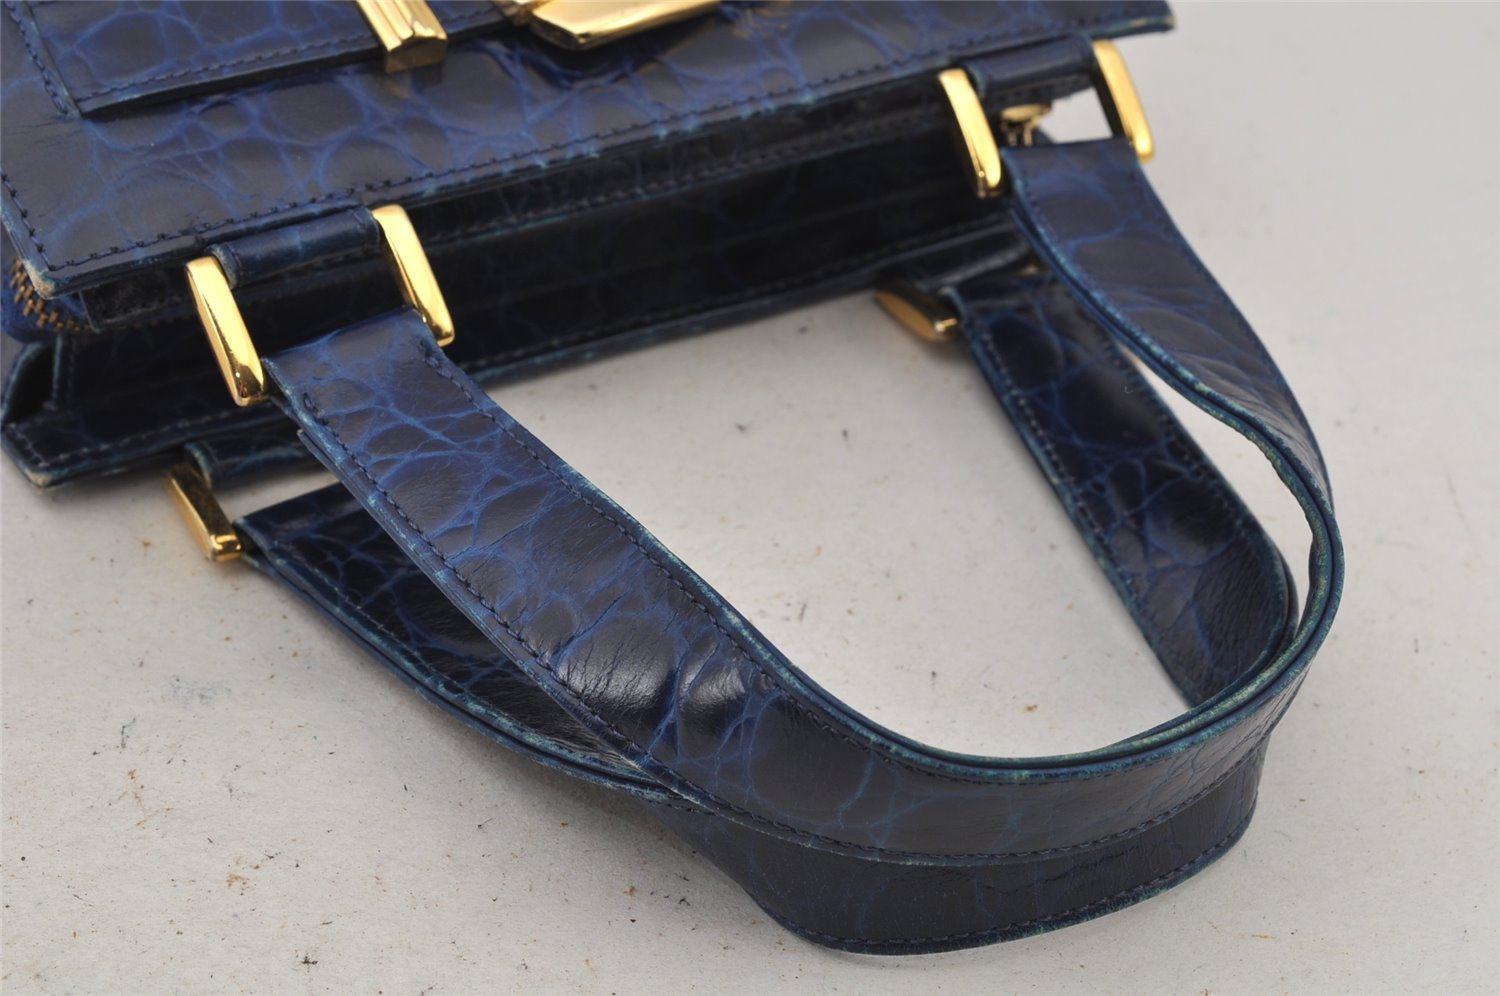 Authentic Gianni Versace Vintage Leather Hand Bag Purse Blue 7522J